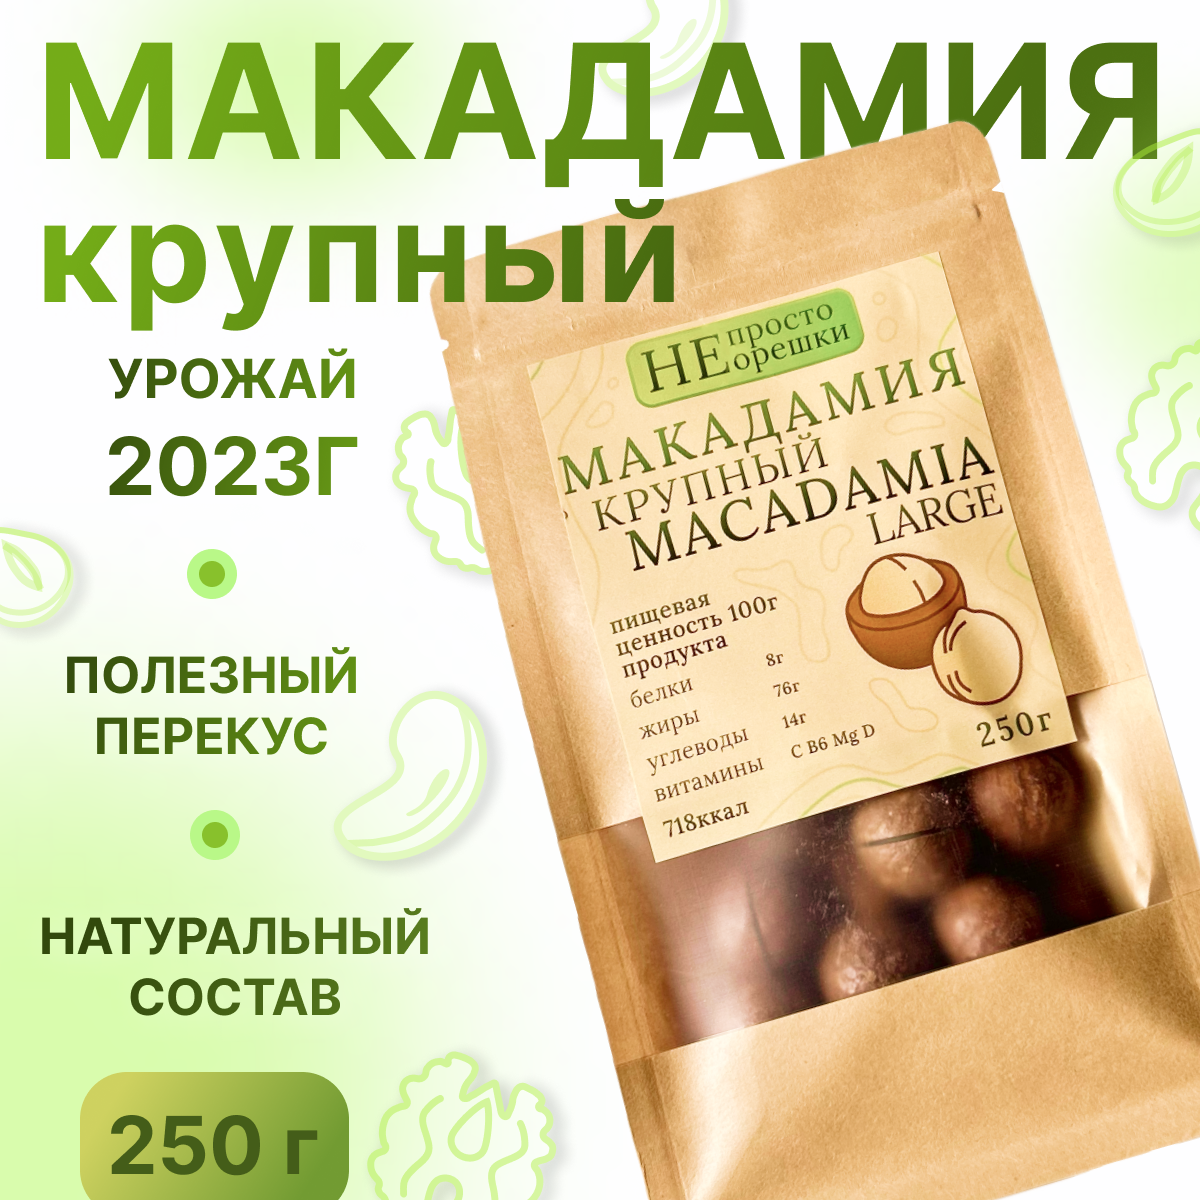 Макадамия орех (Macadamia) 250 грамм в скорлупе с распилом, свежий урожай без горечи, крупный калибр